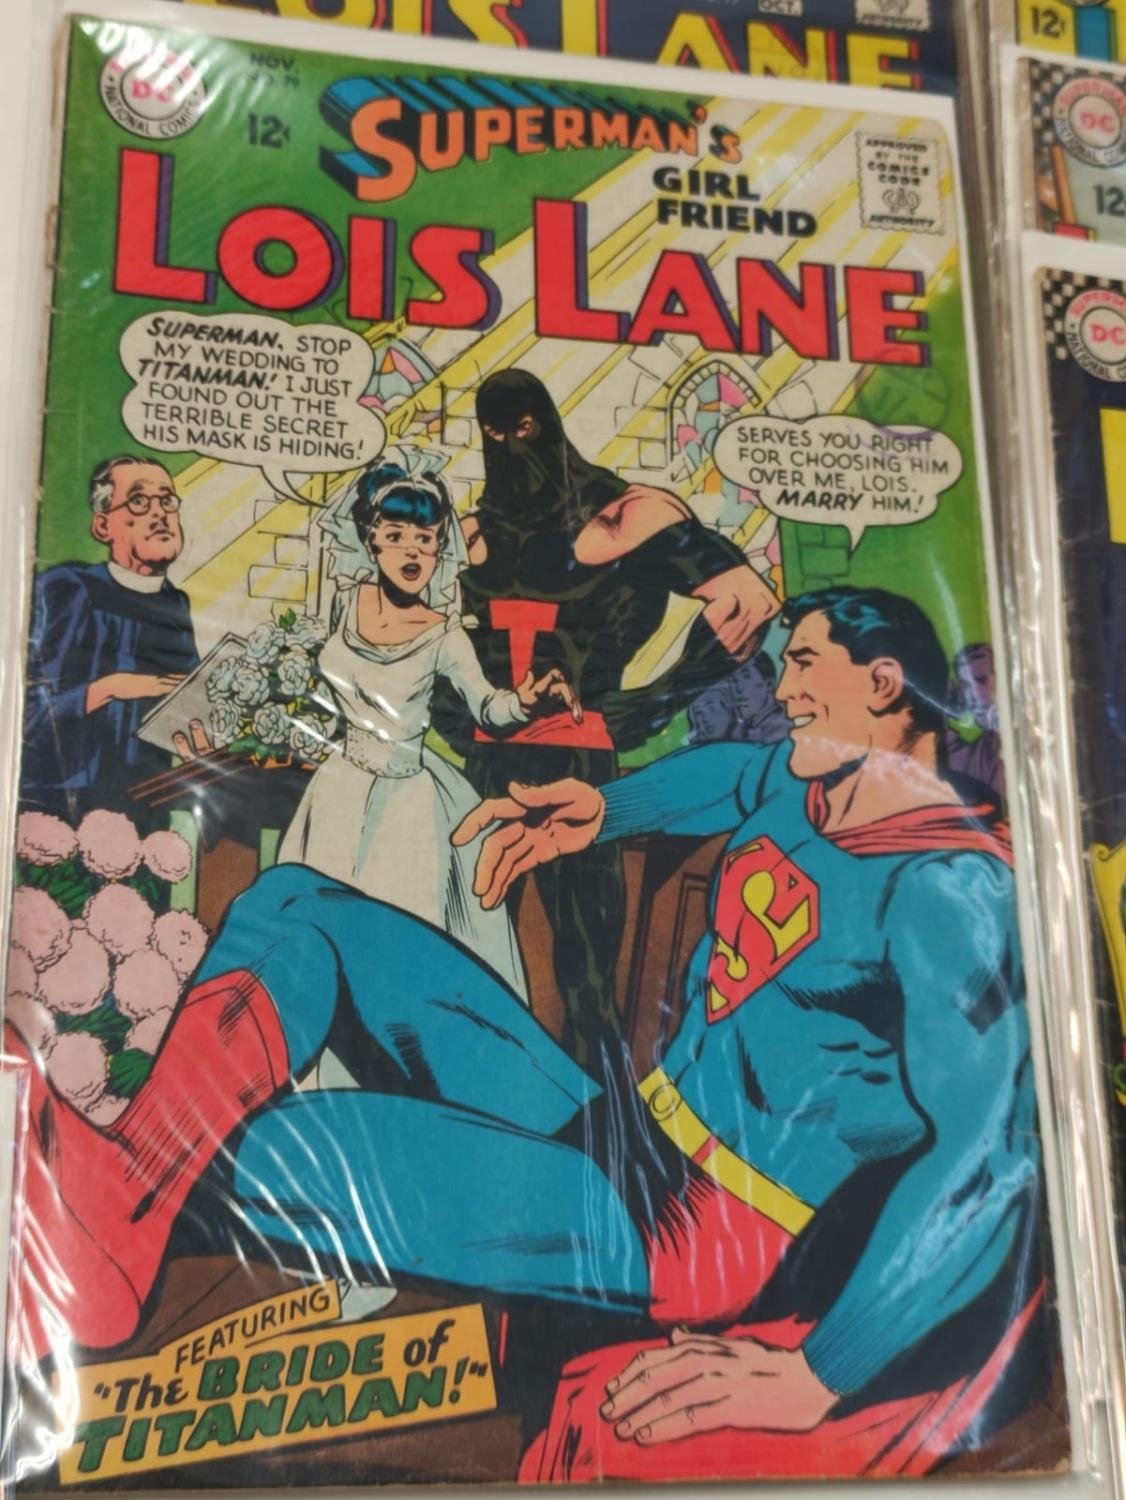 11 editions of Vintage Louis Lane DC Comics. 1966.